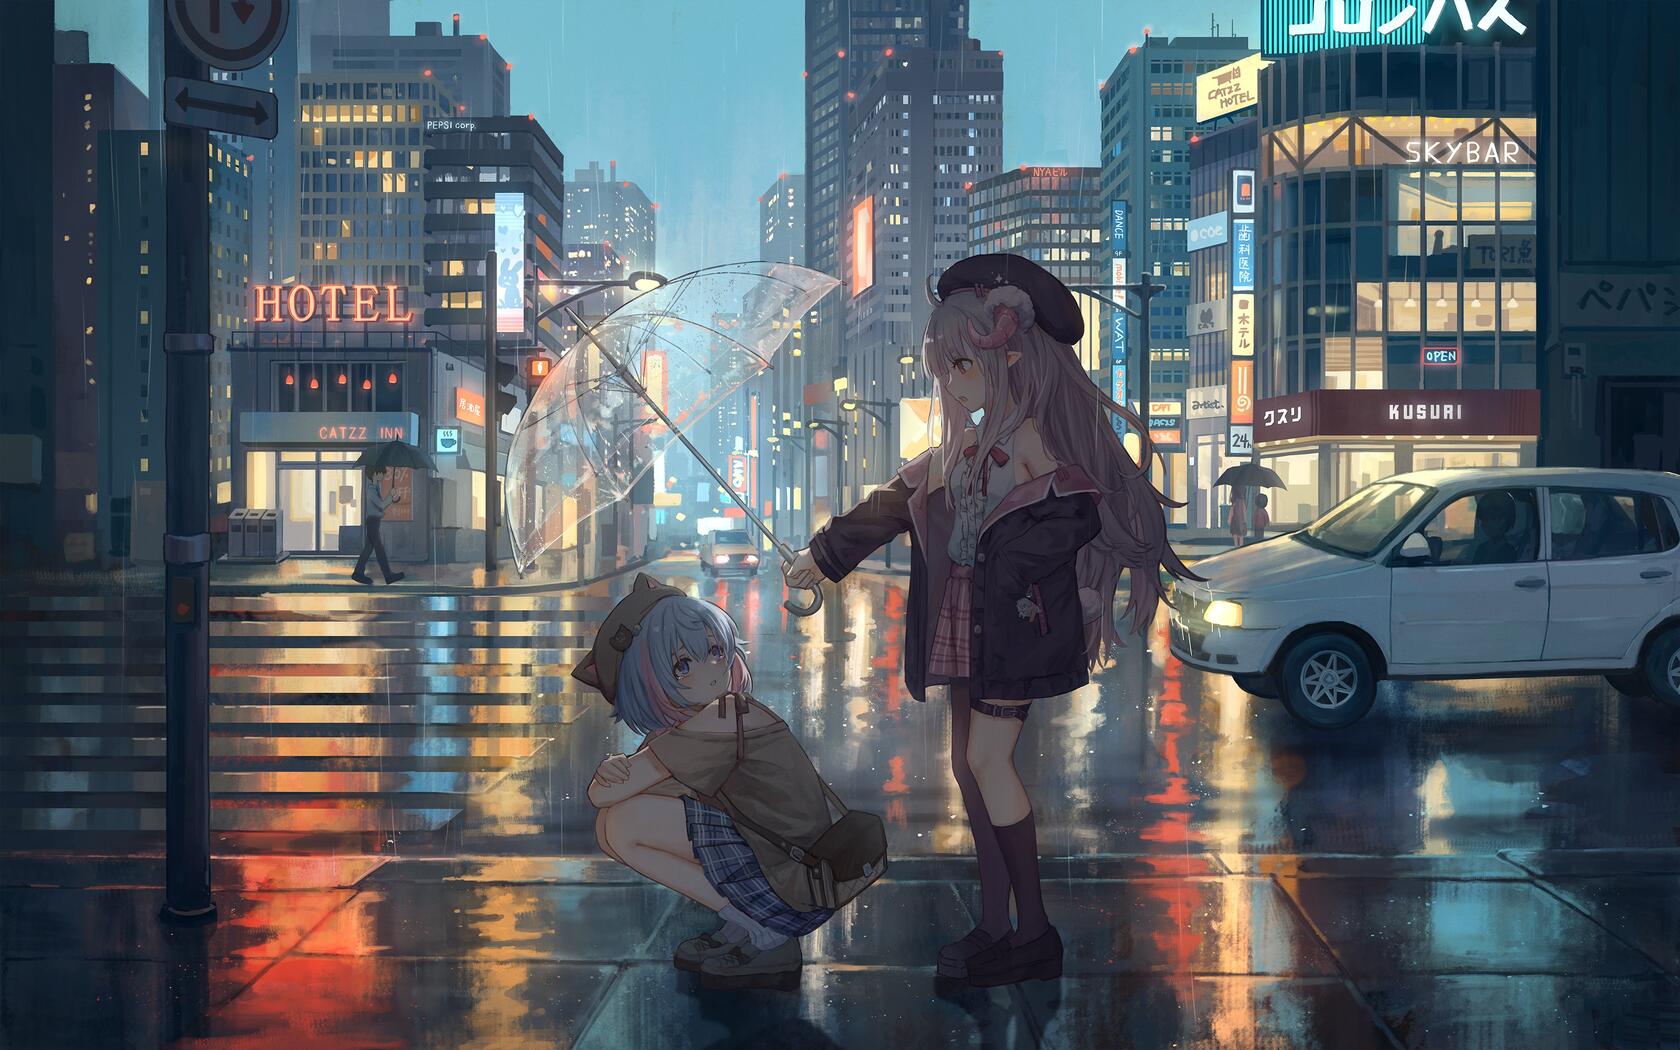 城市街道斑马线，一个帮另一个撑伞的两个动漫萝莉少女桌面壁纸图片